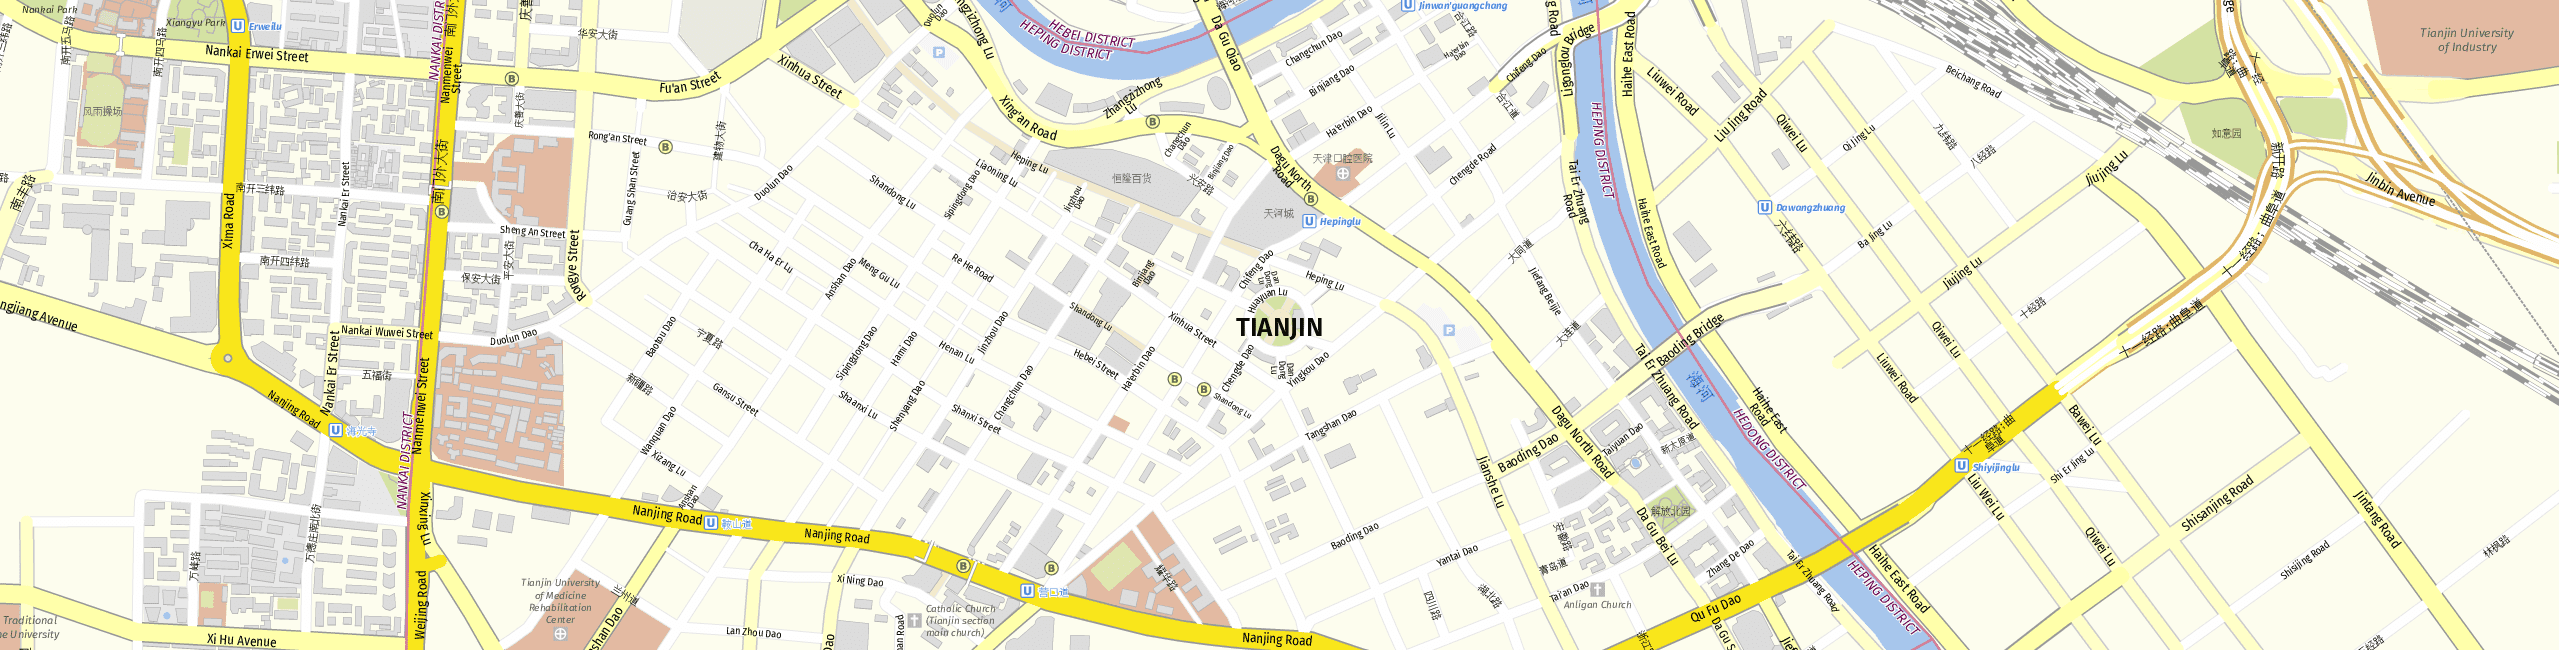 Stadtplan Tianjin zum Downloaden.